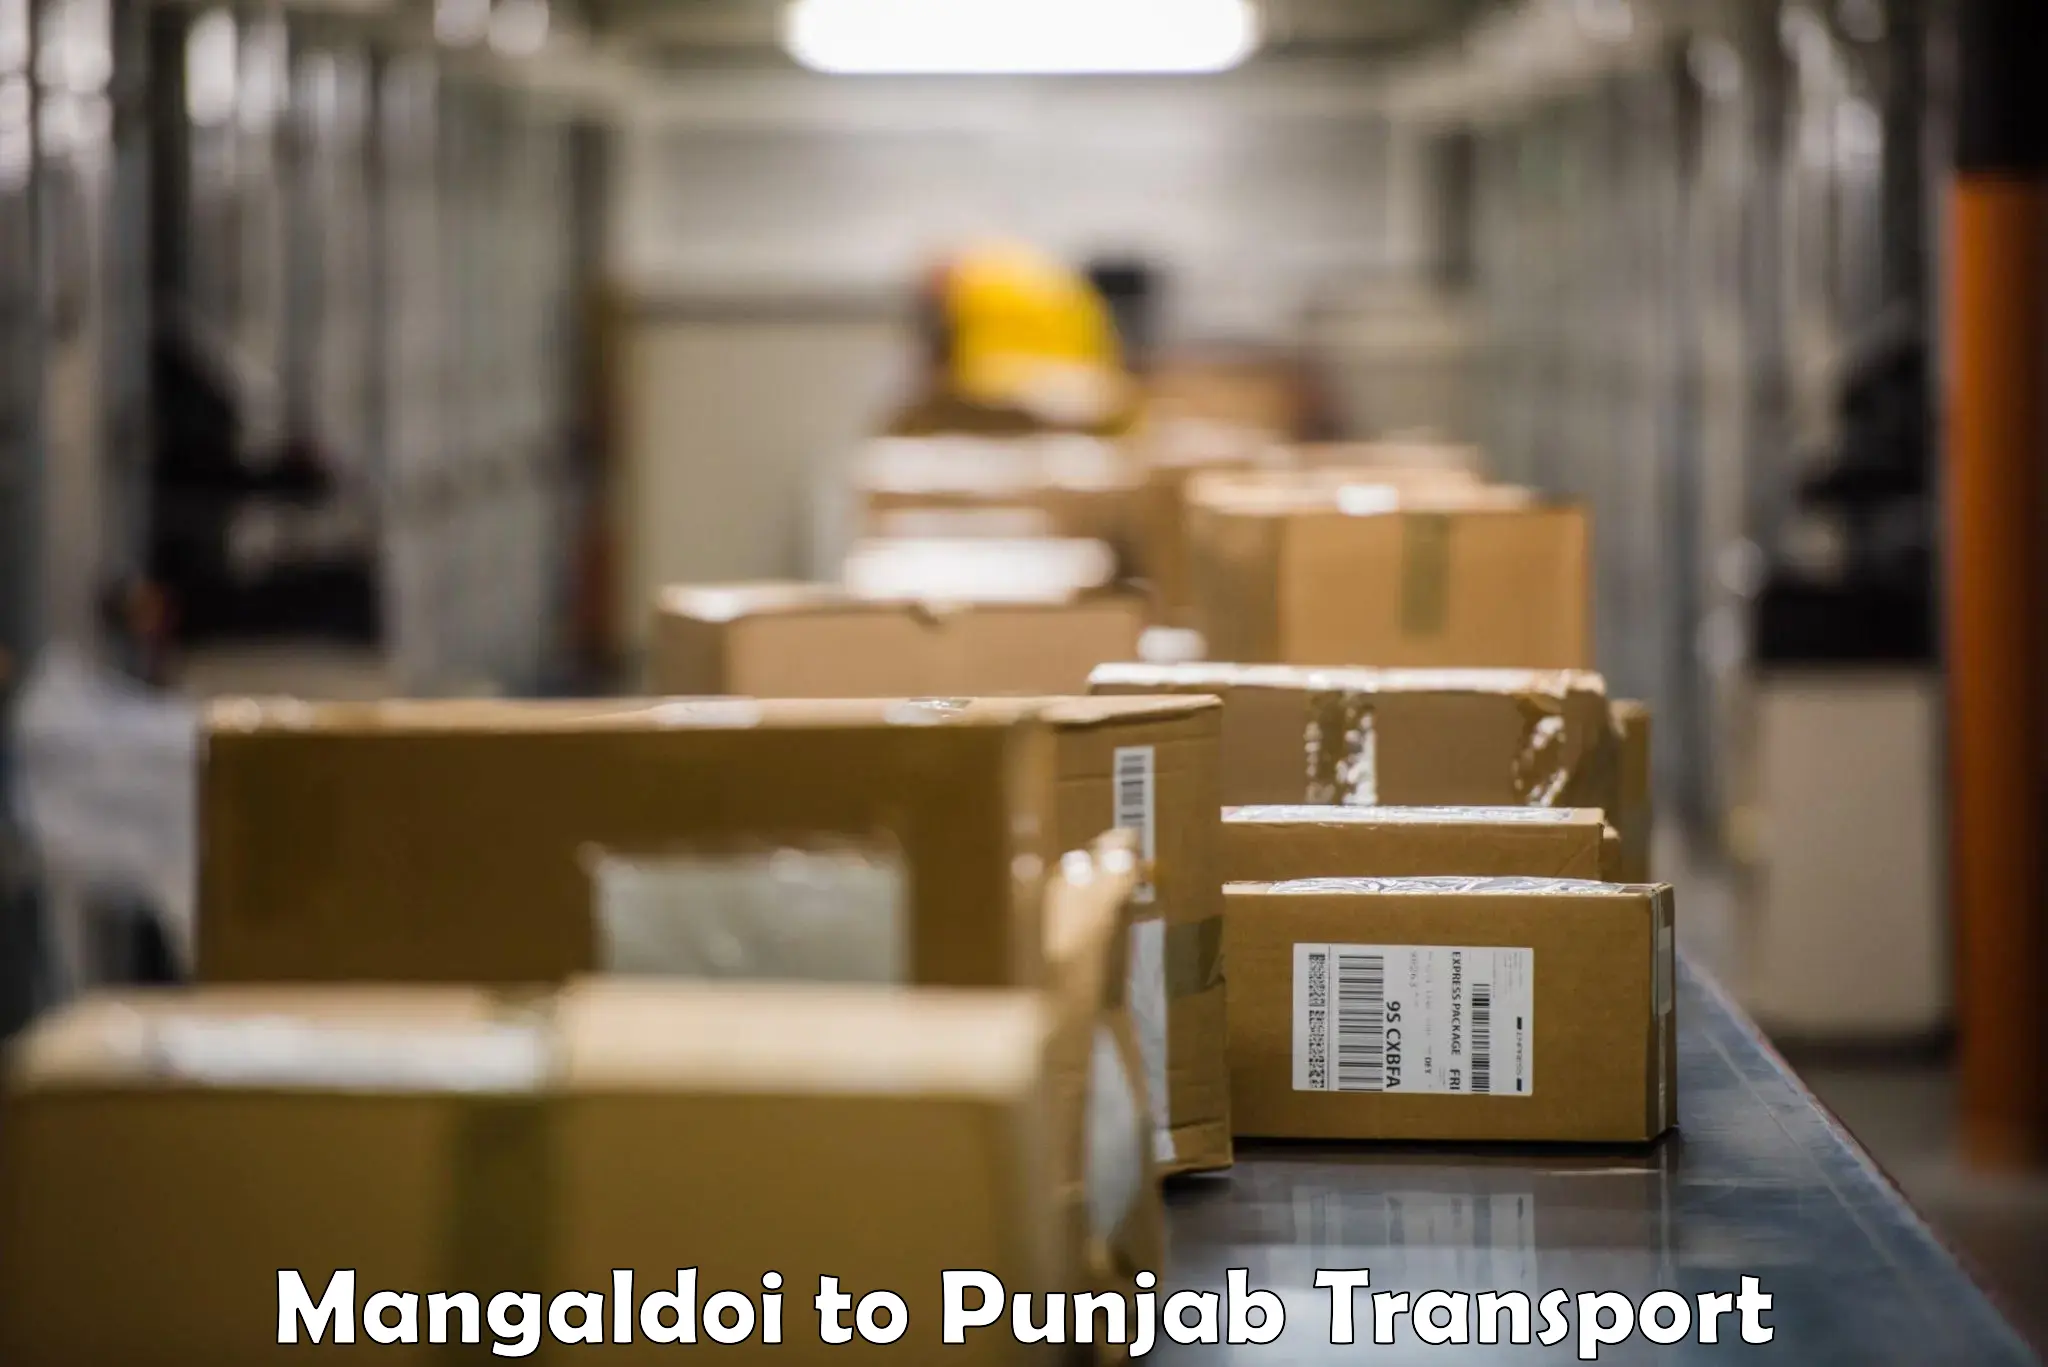 Online transport service Mangaldoi to Sirhind Fatehgarh